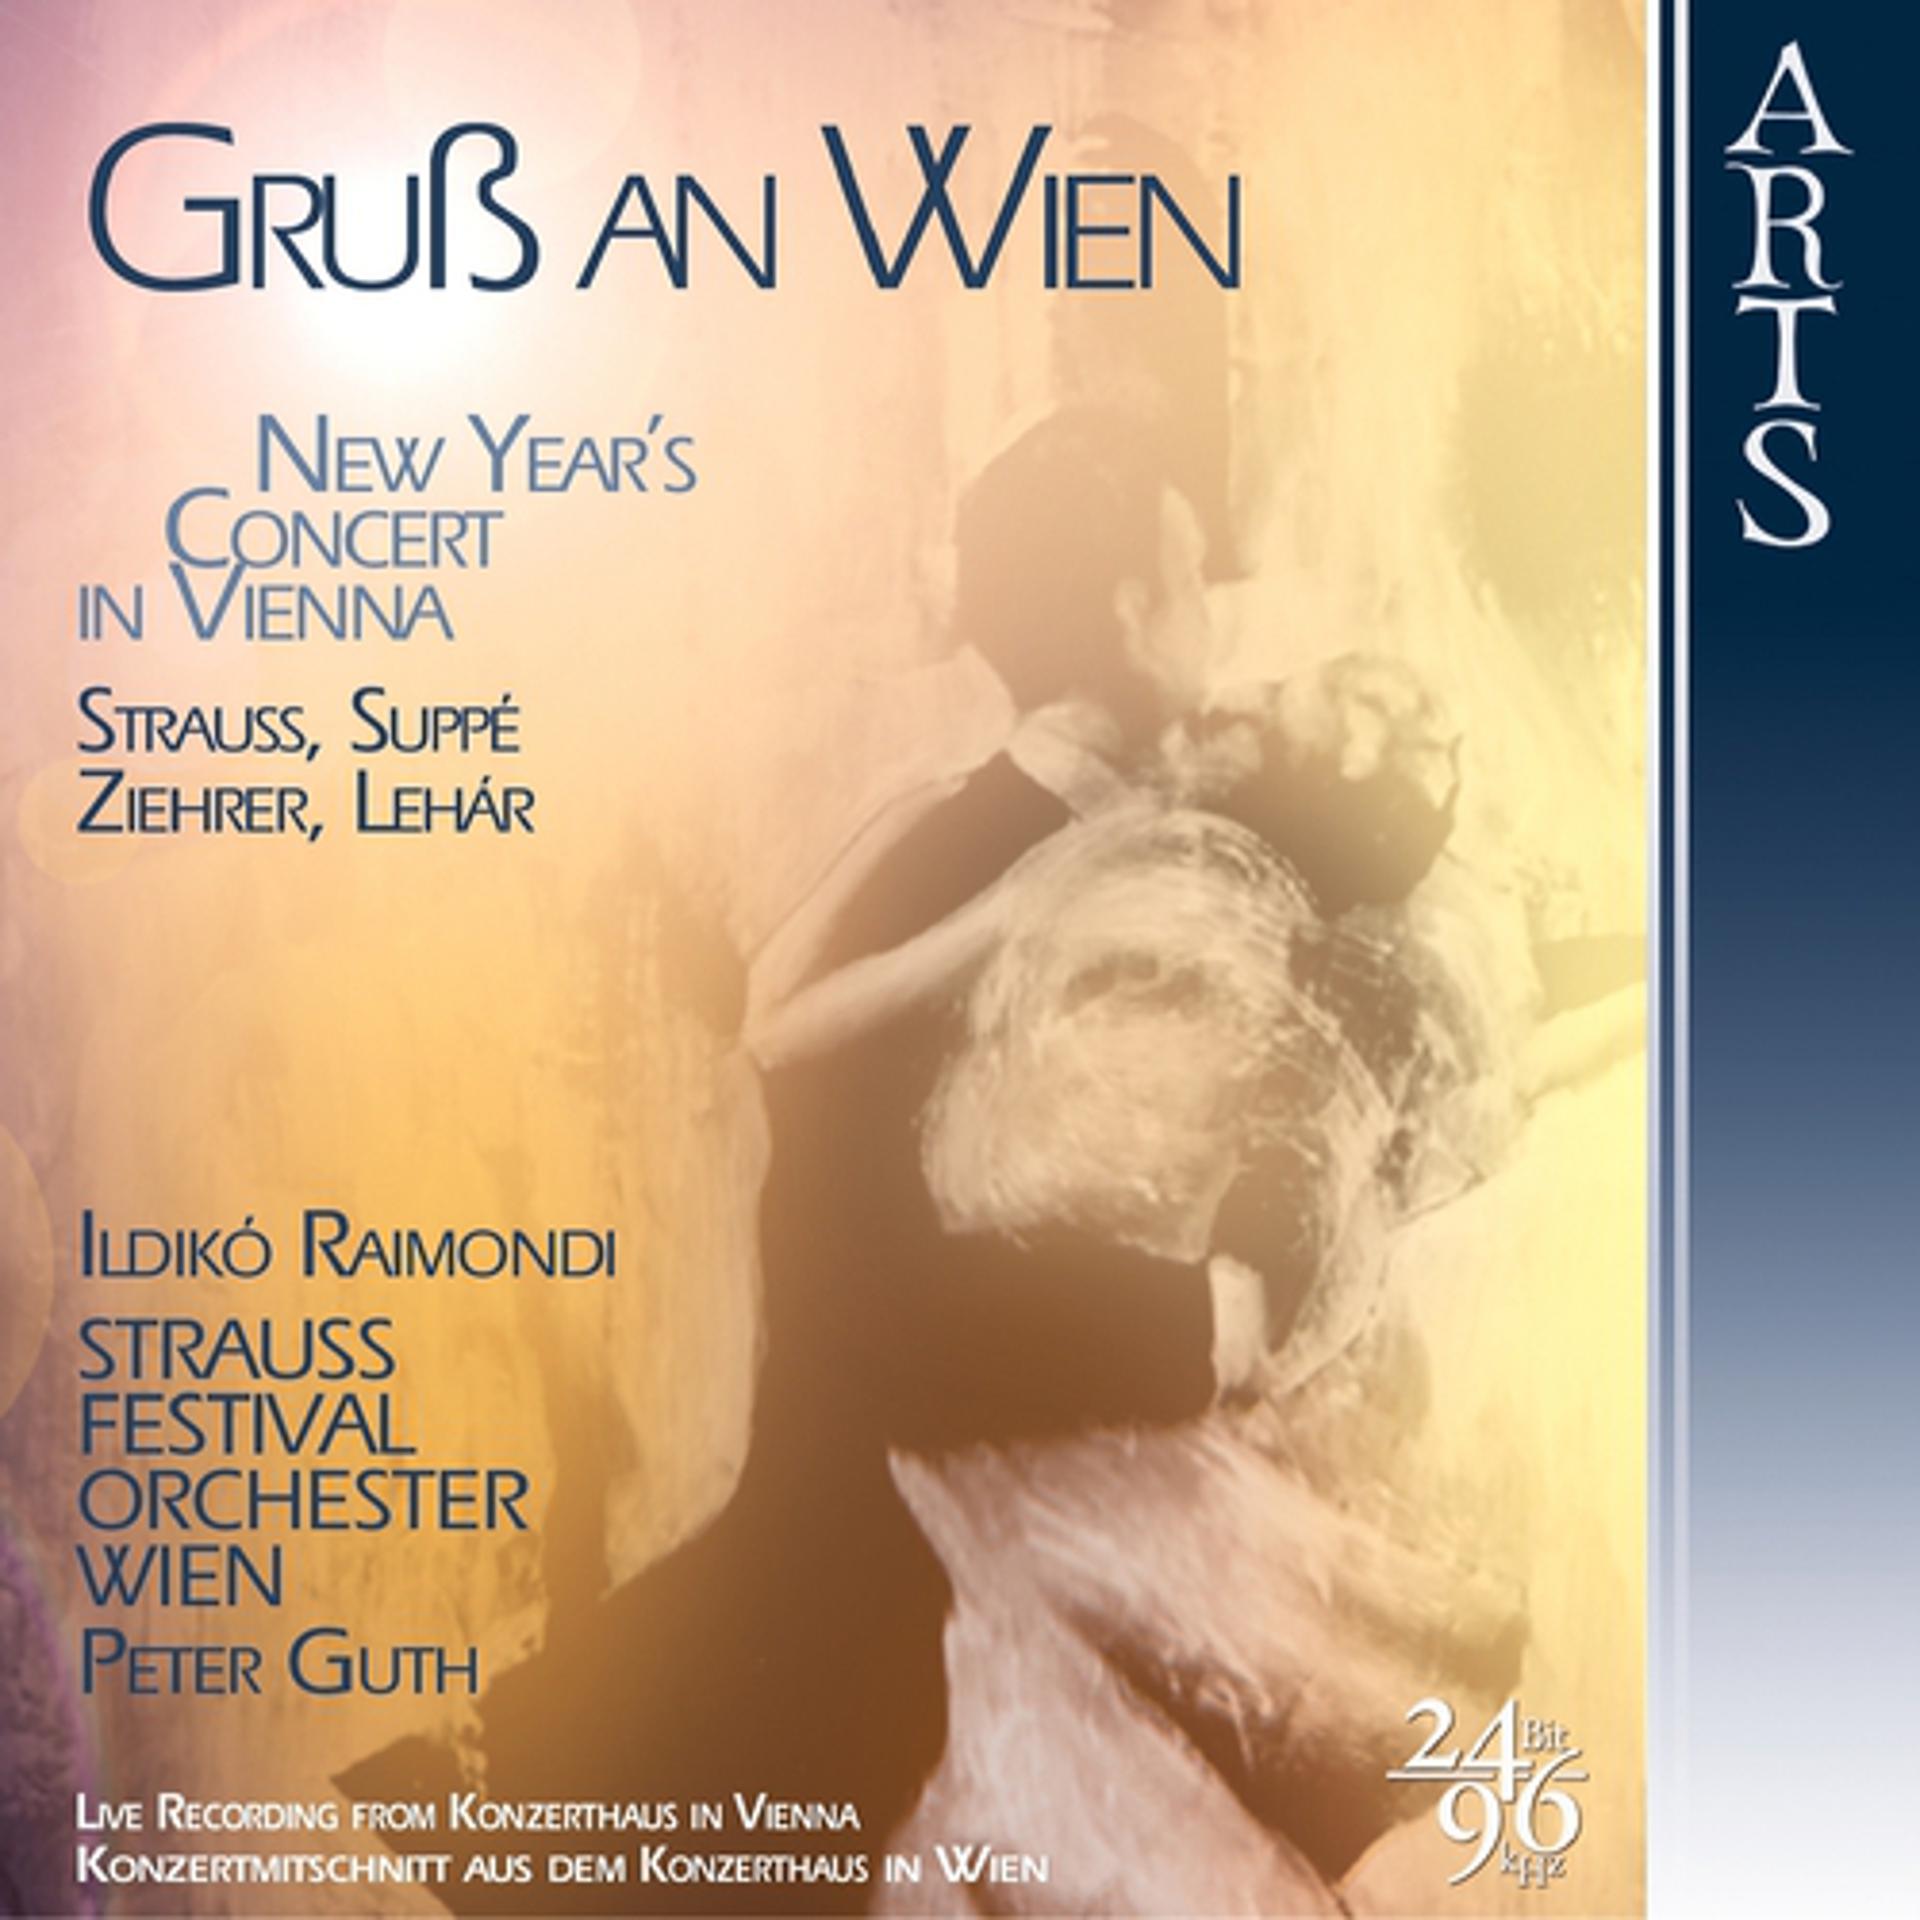 Постер альбома "Gruss an Wien", New Year's Concert in Vienna